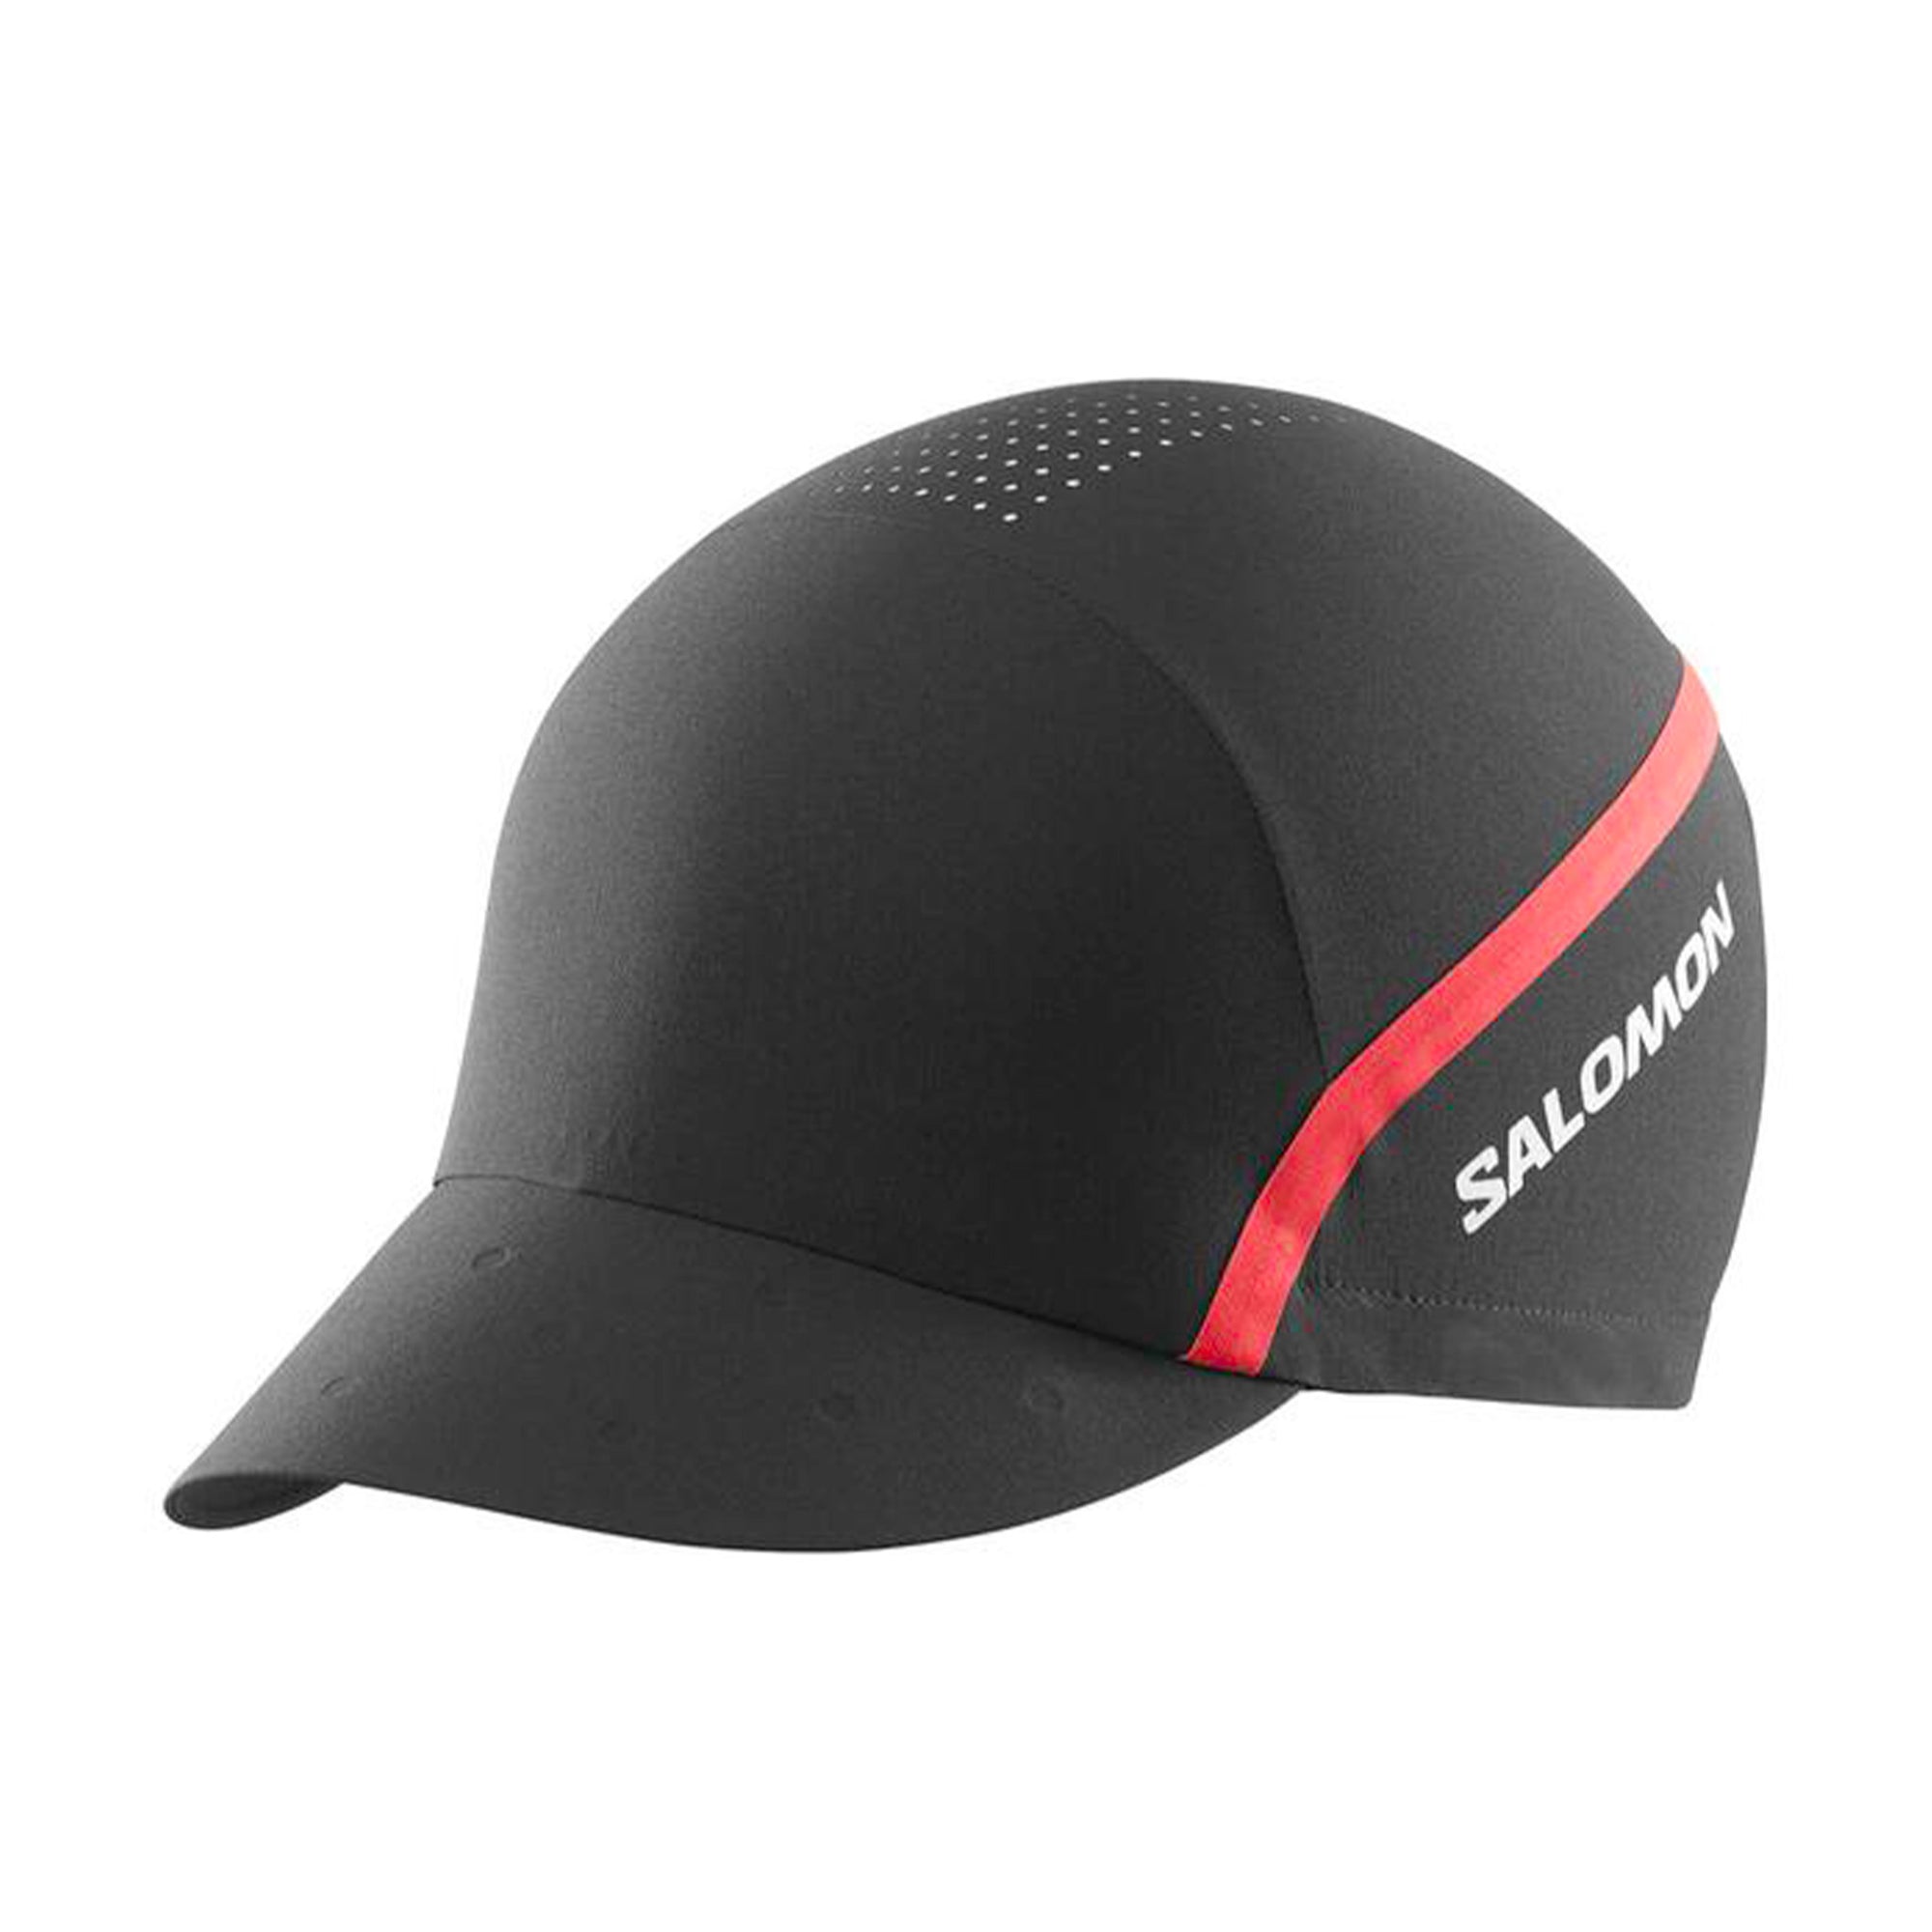 SALOMON S/LAB SPEED CAP - UNISEX